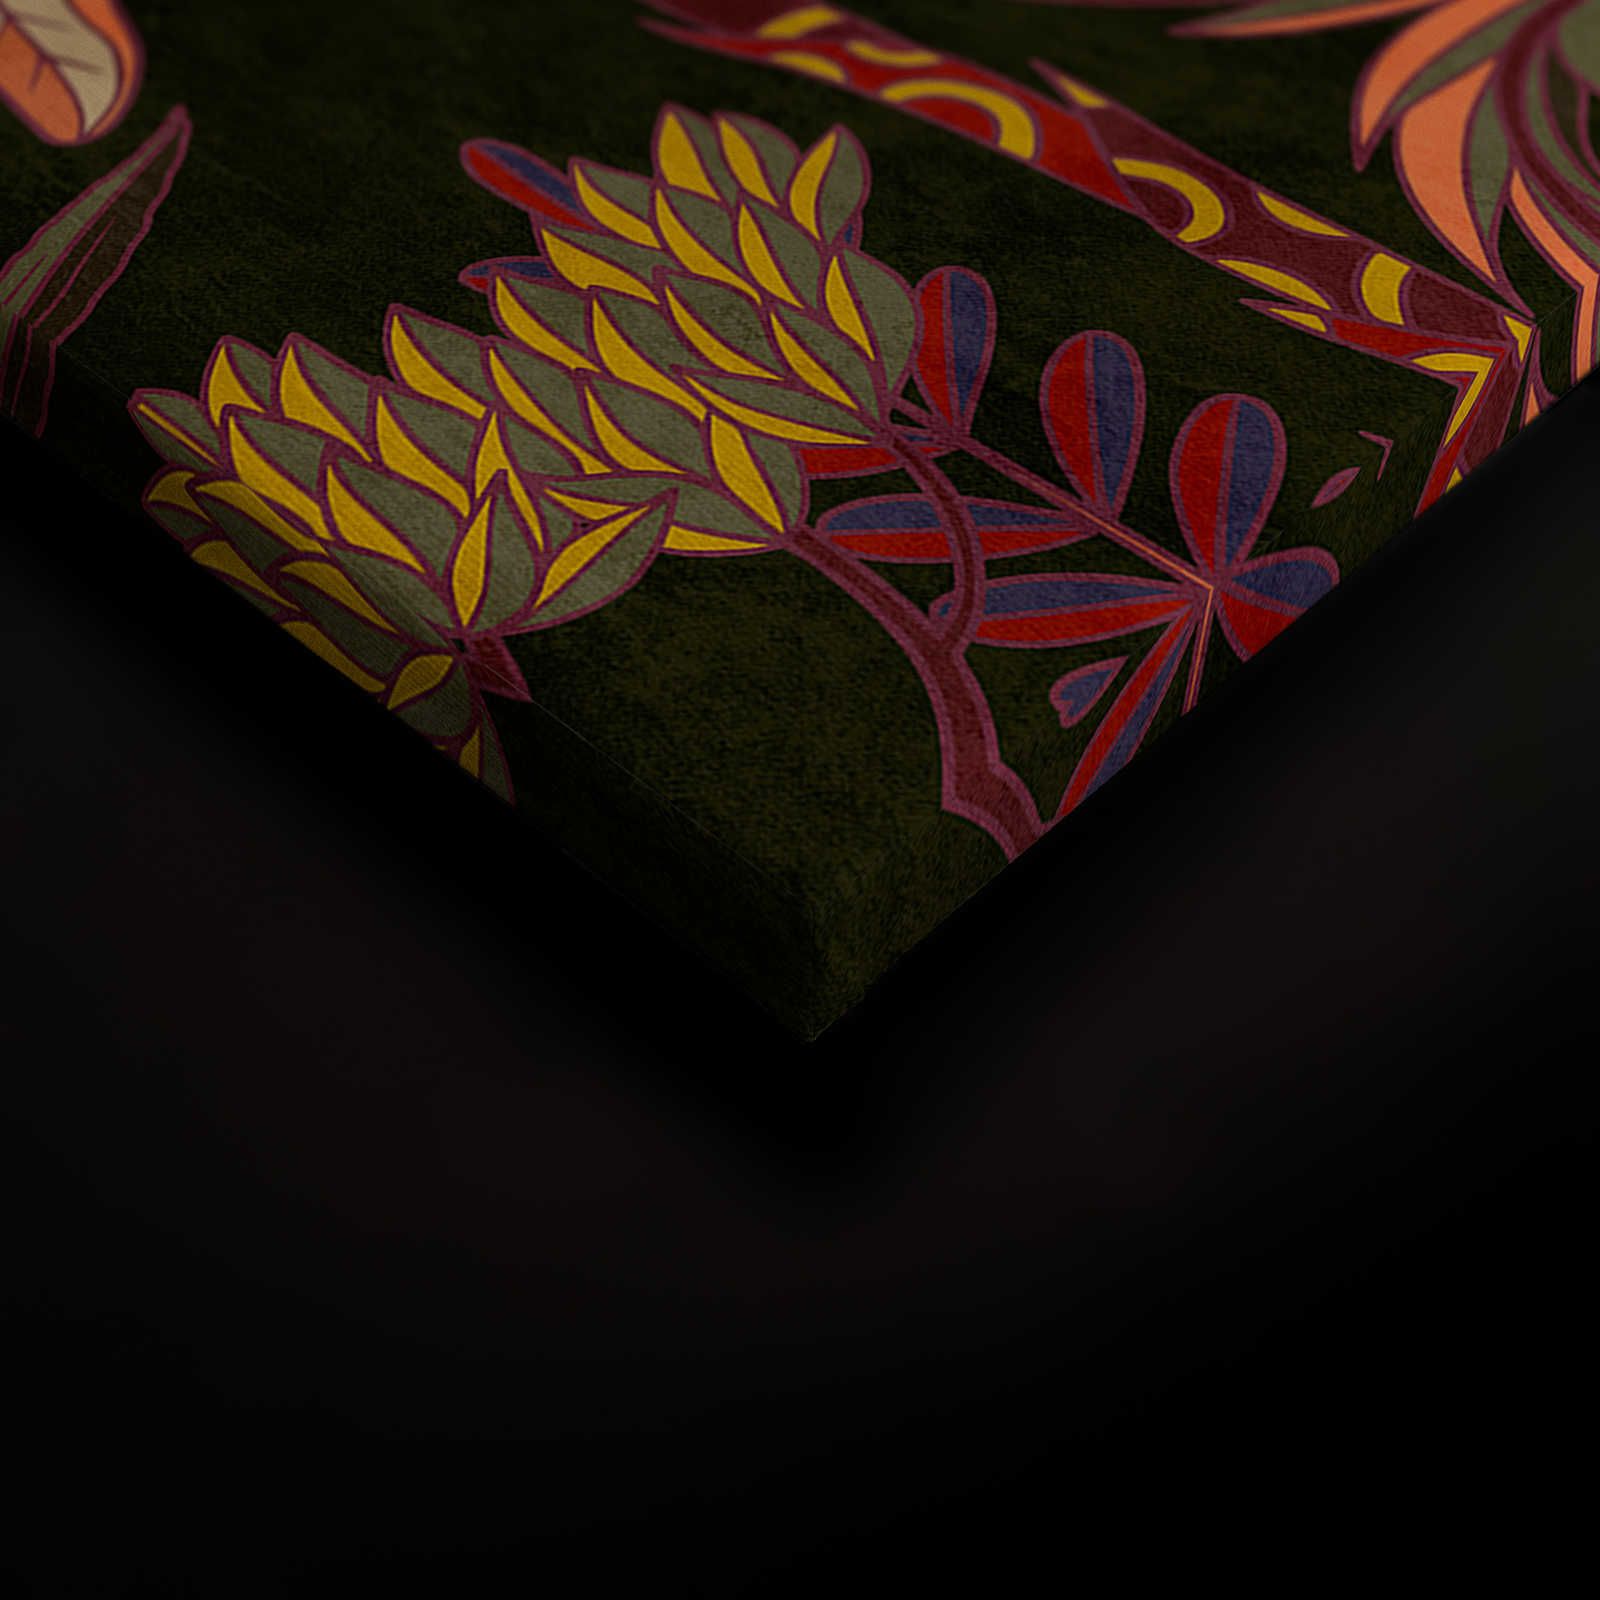             Lagos 1 - Palmiers toile style graphique coloré en textile - 0,90 m x 0,60 m
        